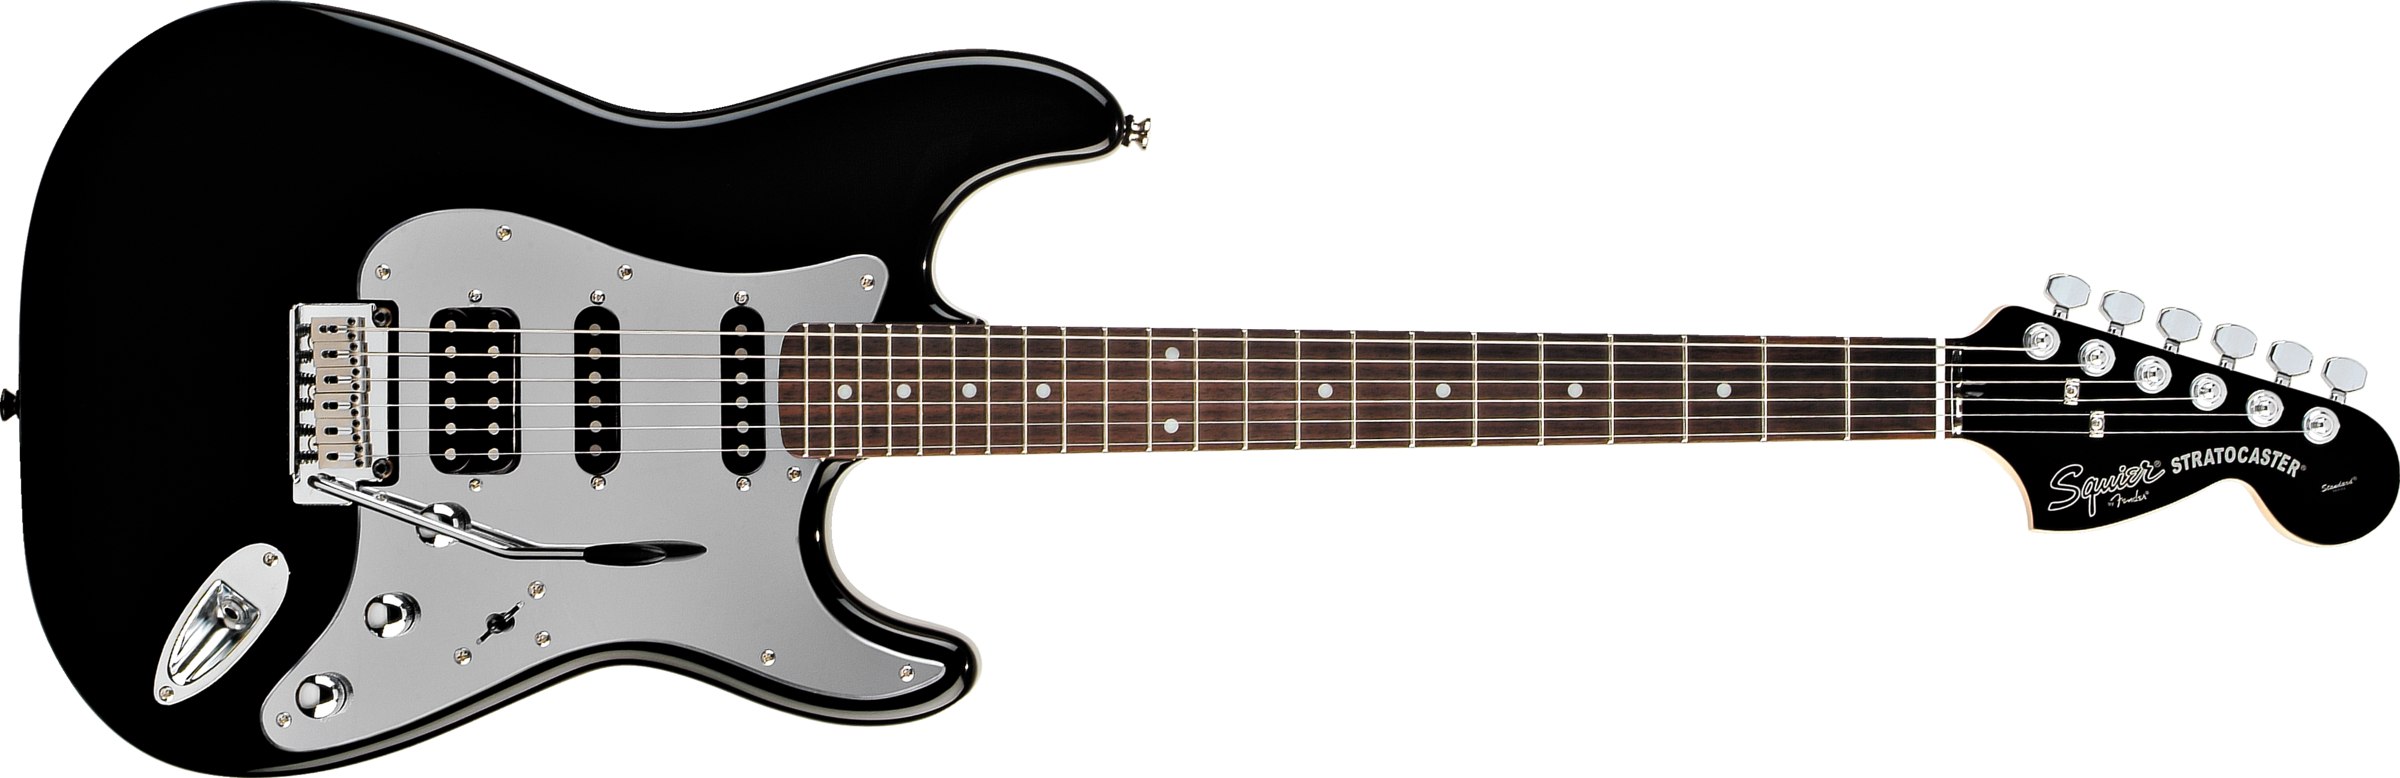 E-Guitar PNG descargar imagen